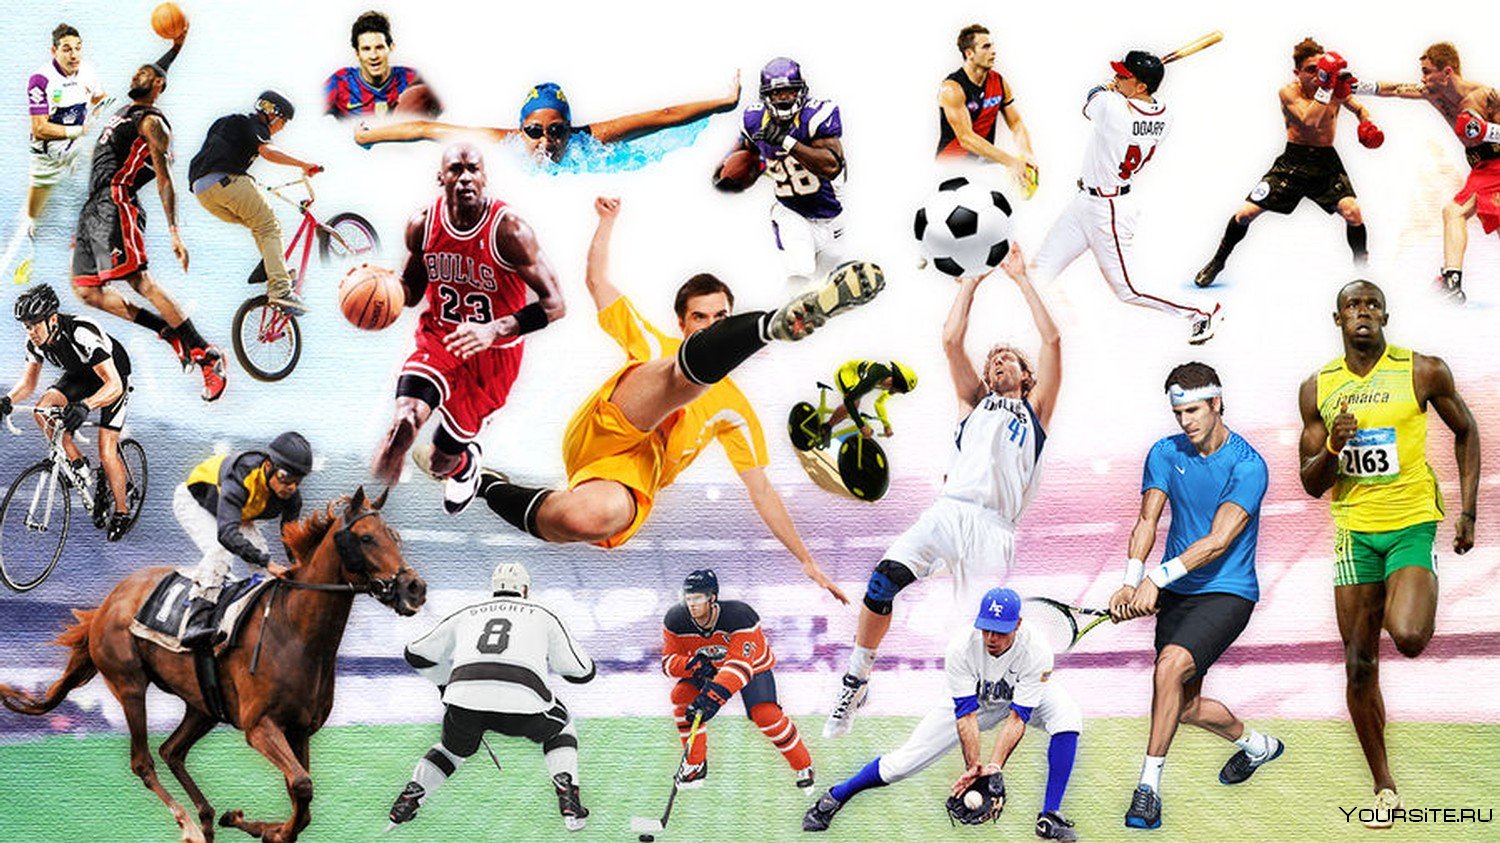 Разновидность спортивной игры